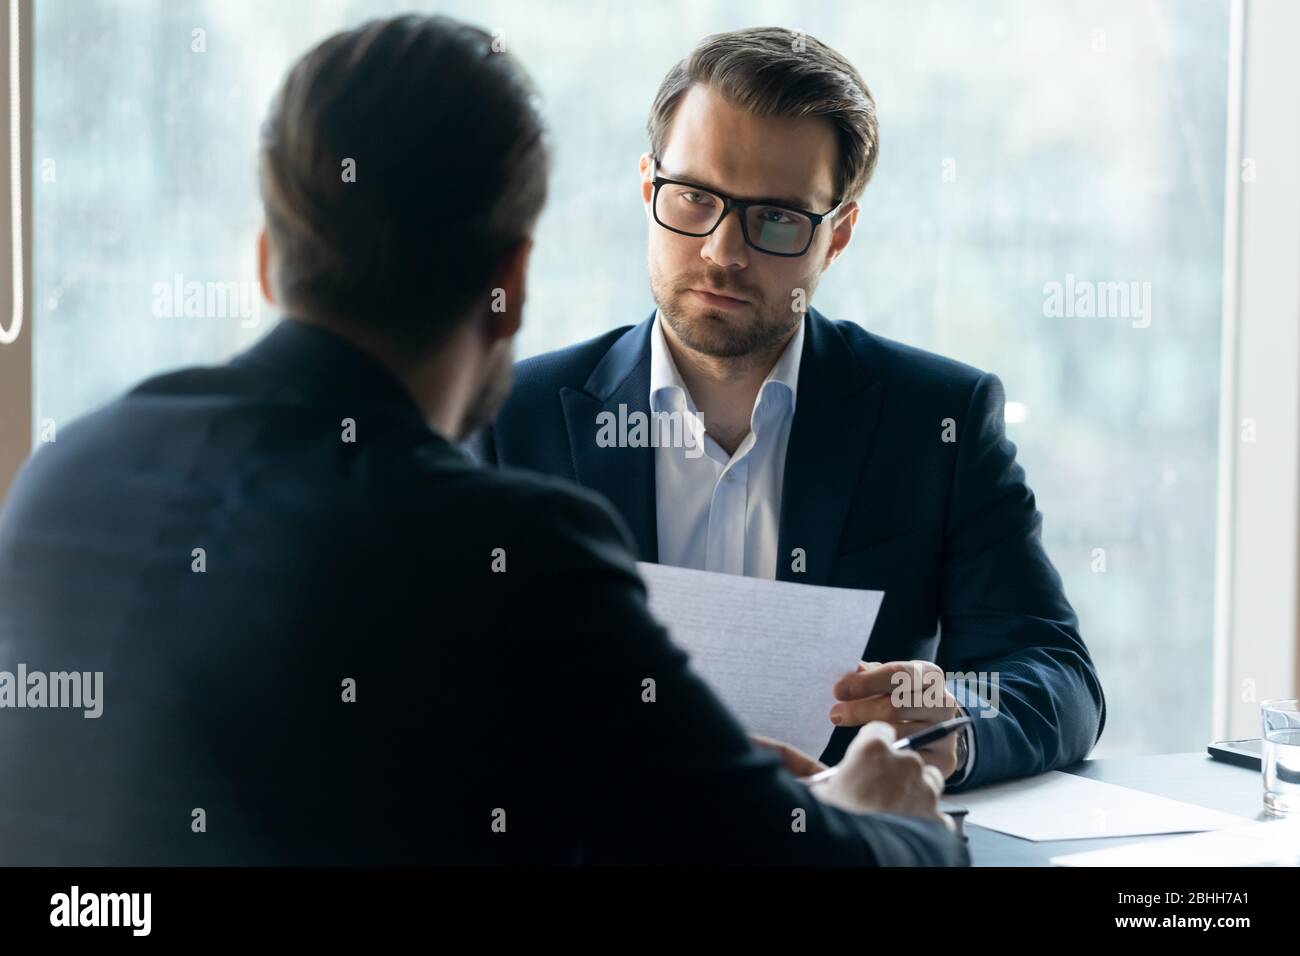 Seriöse HR-Manager auf der Suche nach Bewerber, mit lebenslauf Stockfoto